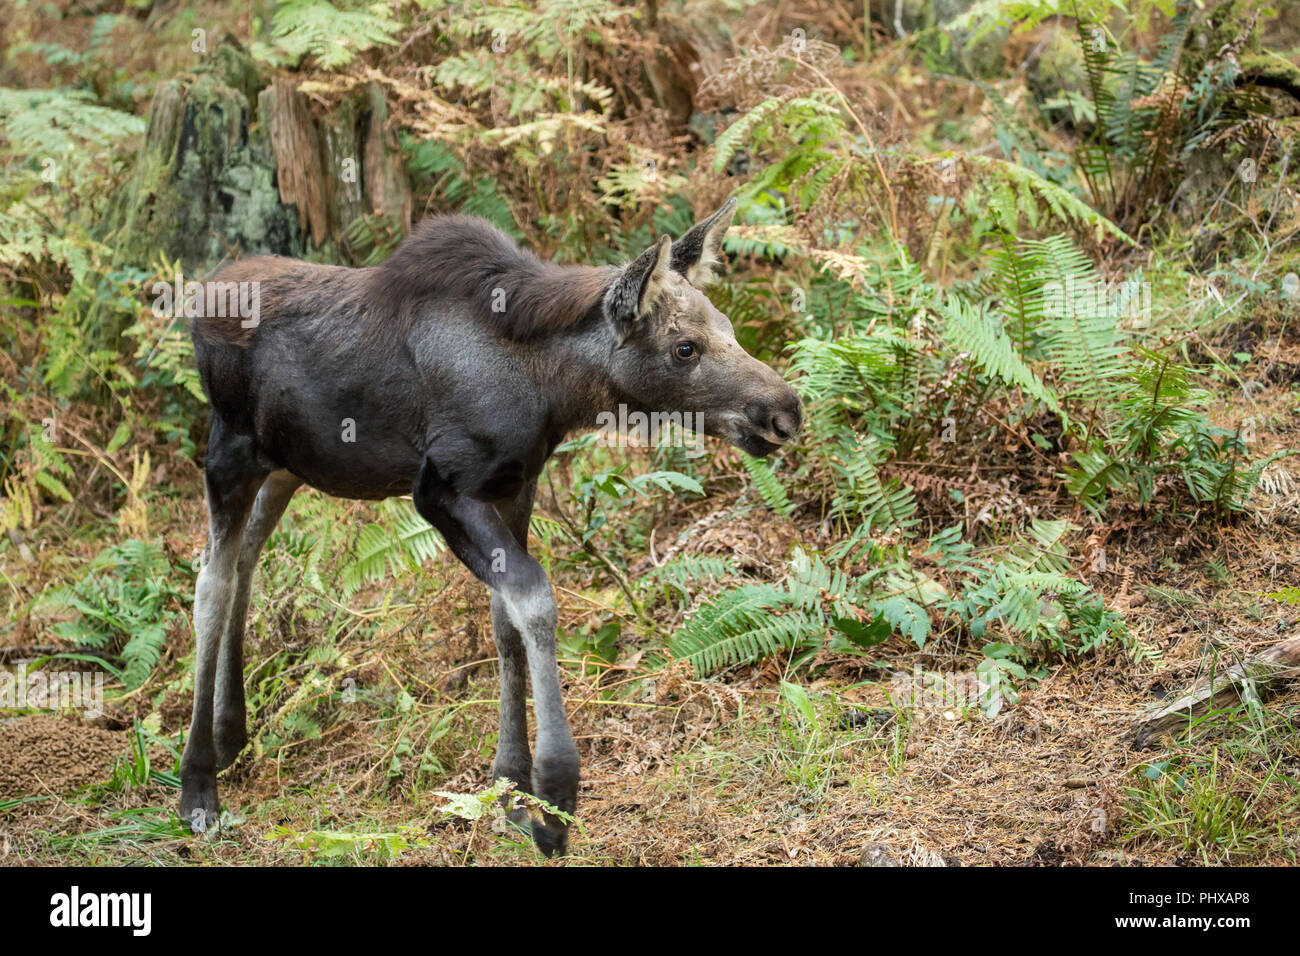 Moose ternero caminando, en busca de su madre, en Northwest Trek Wildlife Park cerca de Eatonville, Washington, EE.UU. Foto de stock